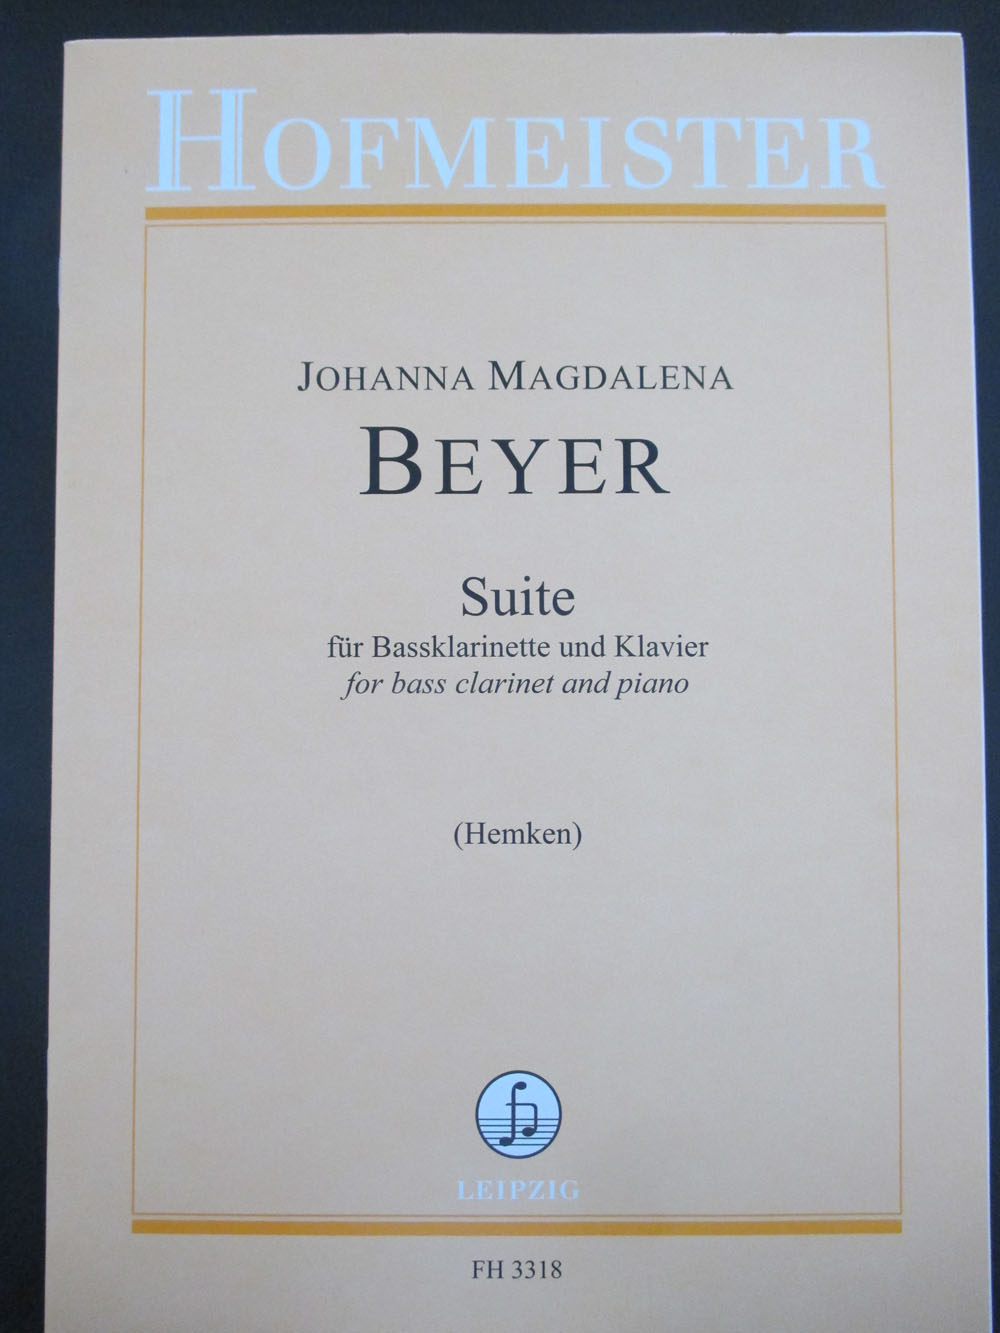 ホフマイスター バイエル/組曲(バスクラリネット洋書) Hofmeister